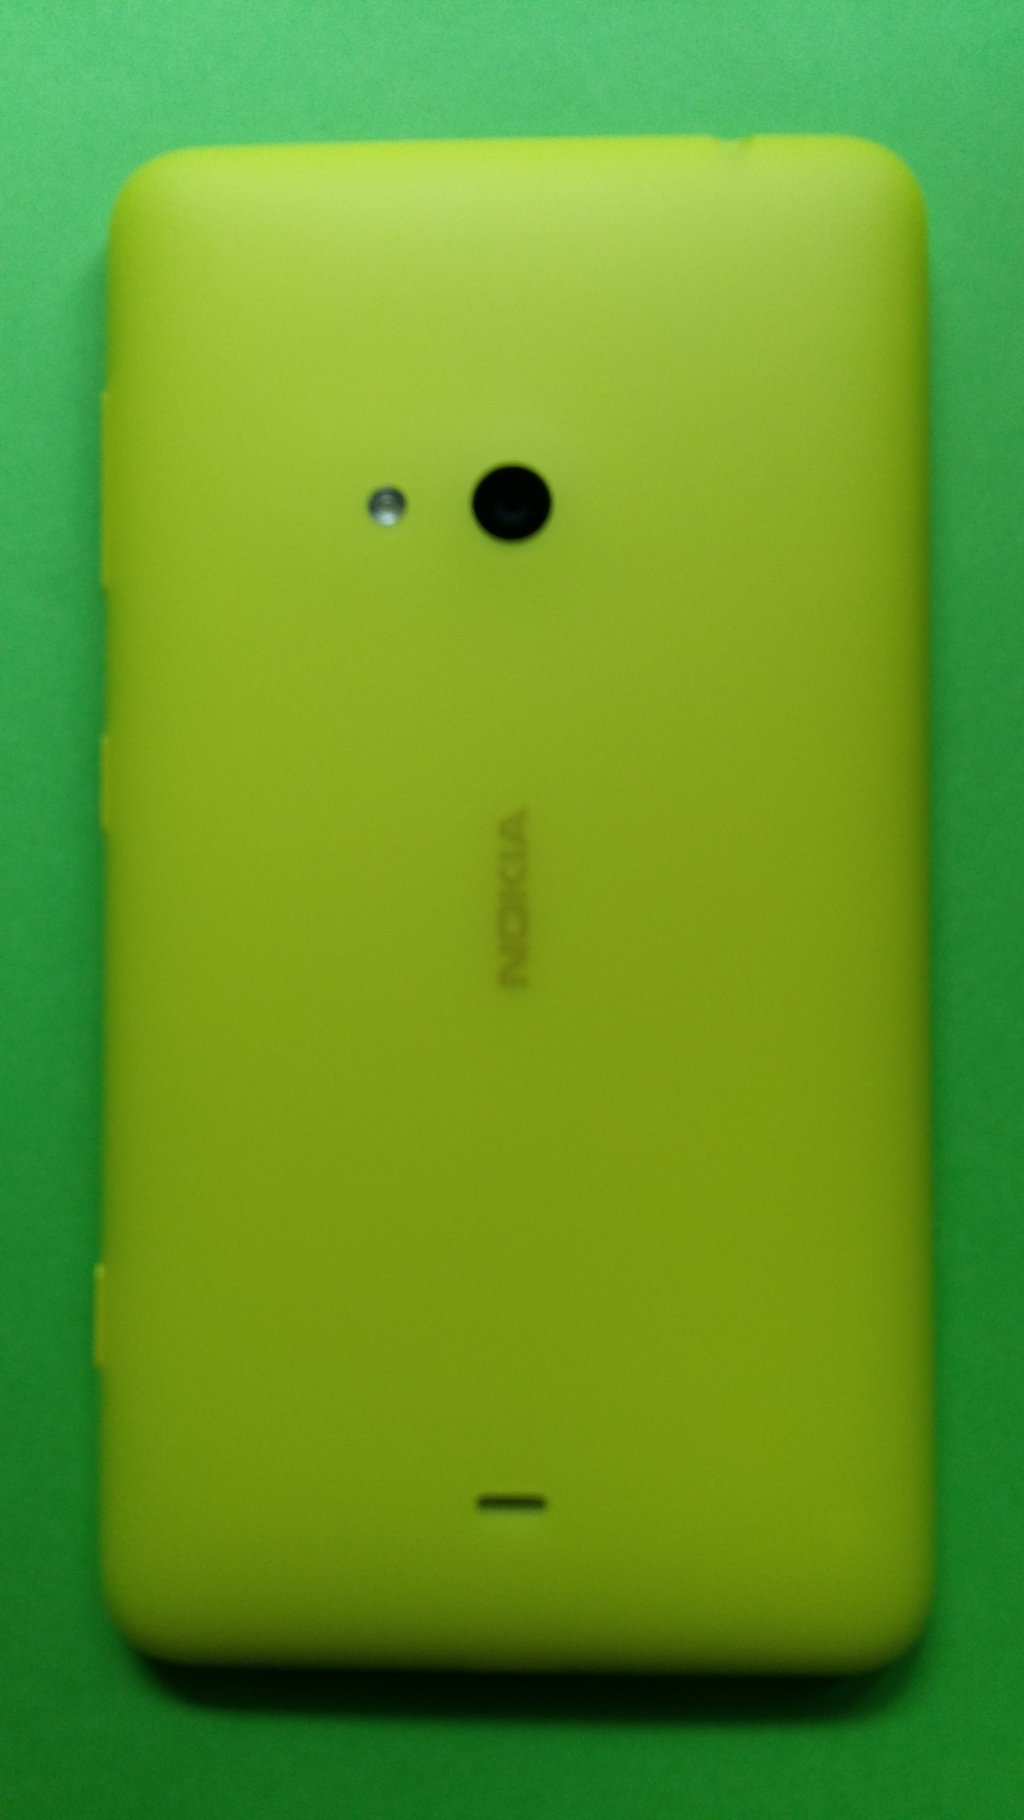 image-8337125-Nokia_625_Lumia_(1)2.w640.jpg